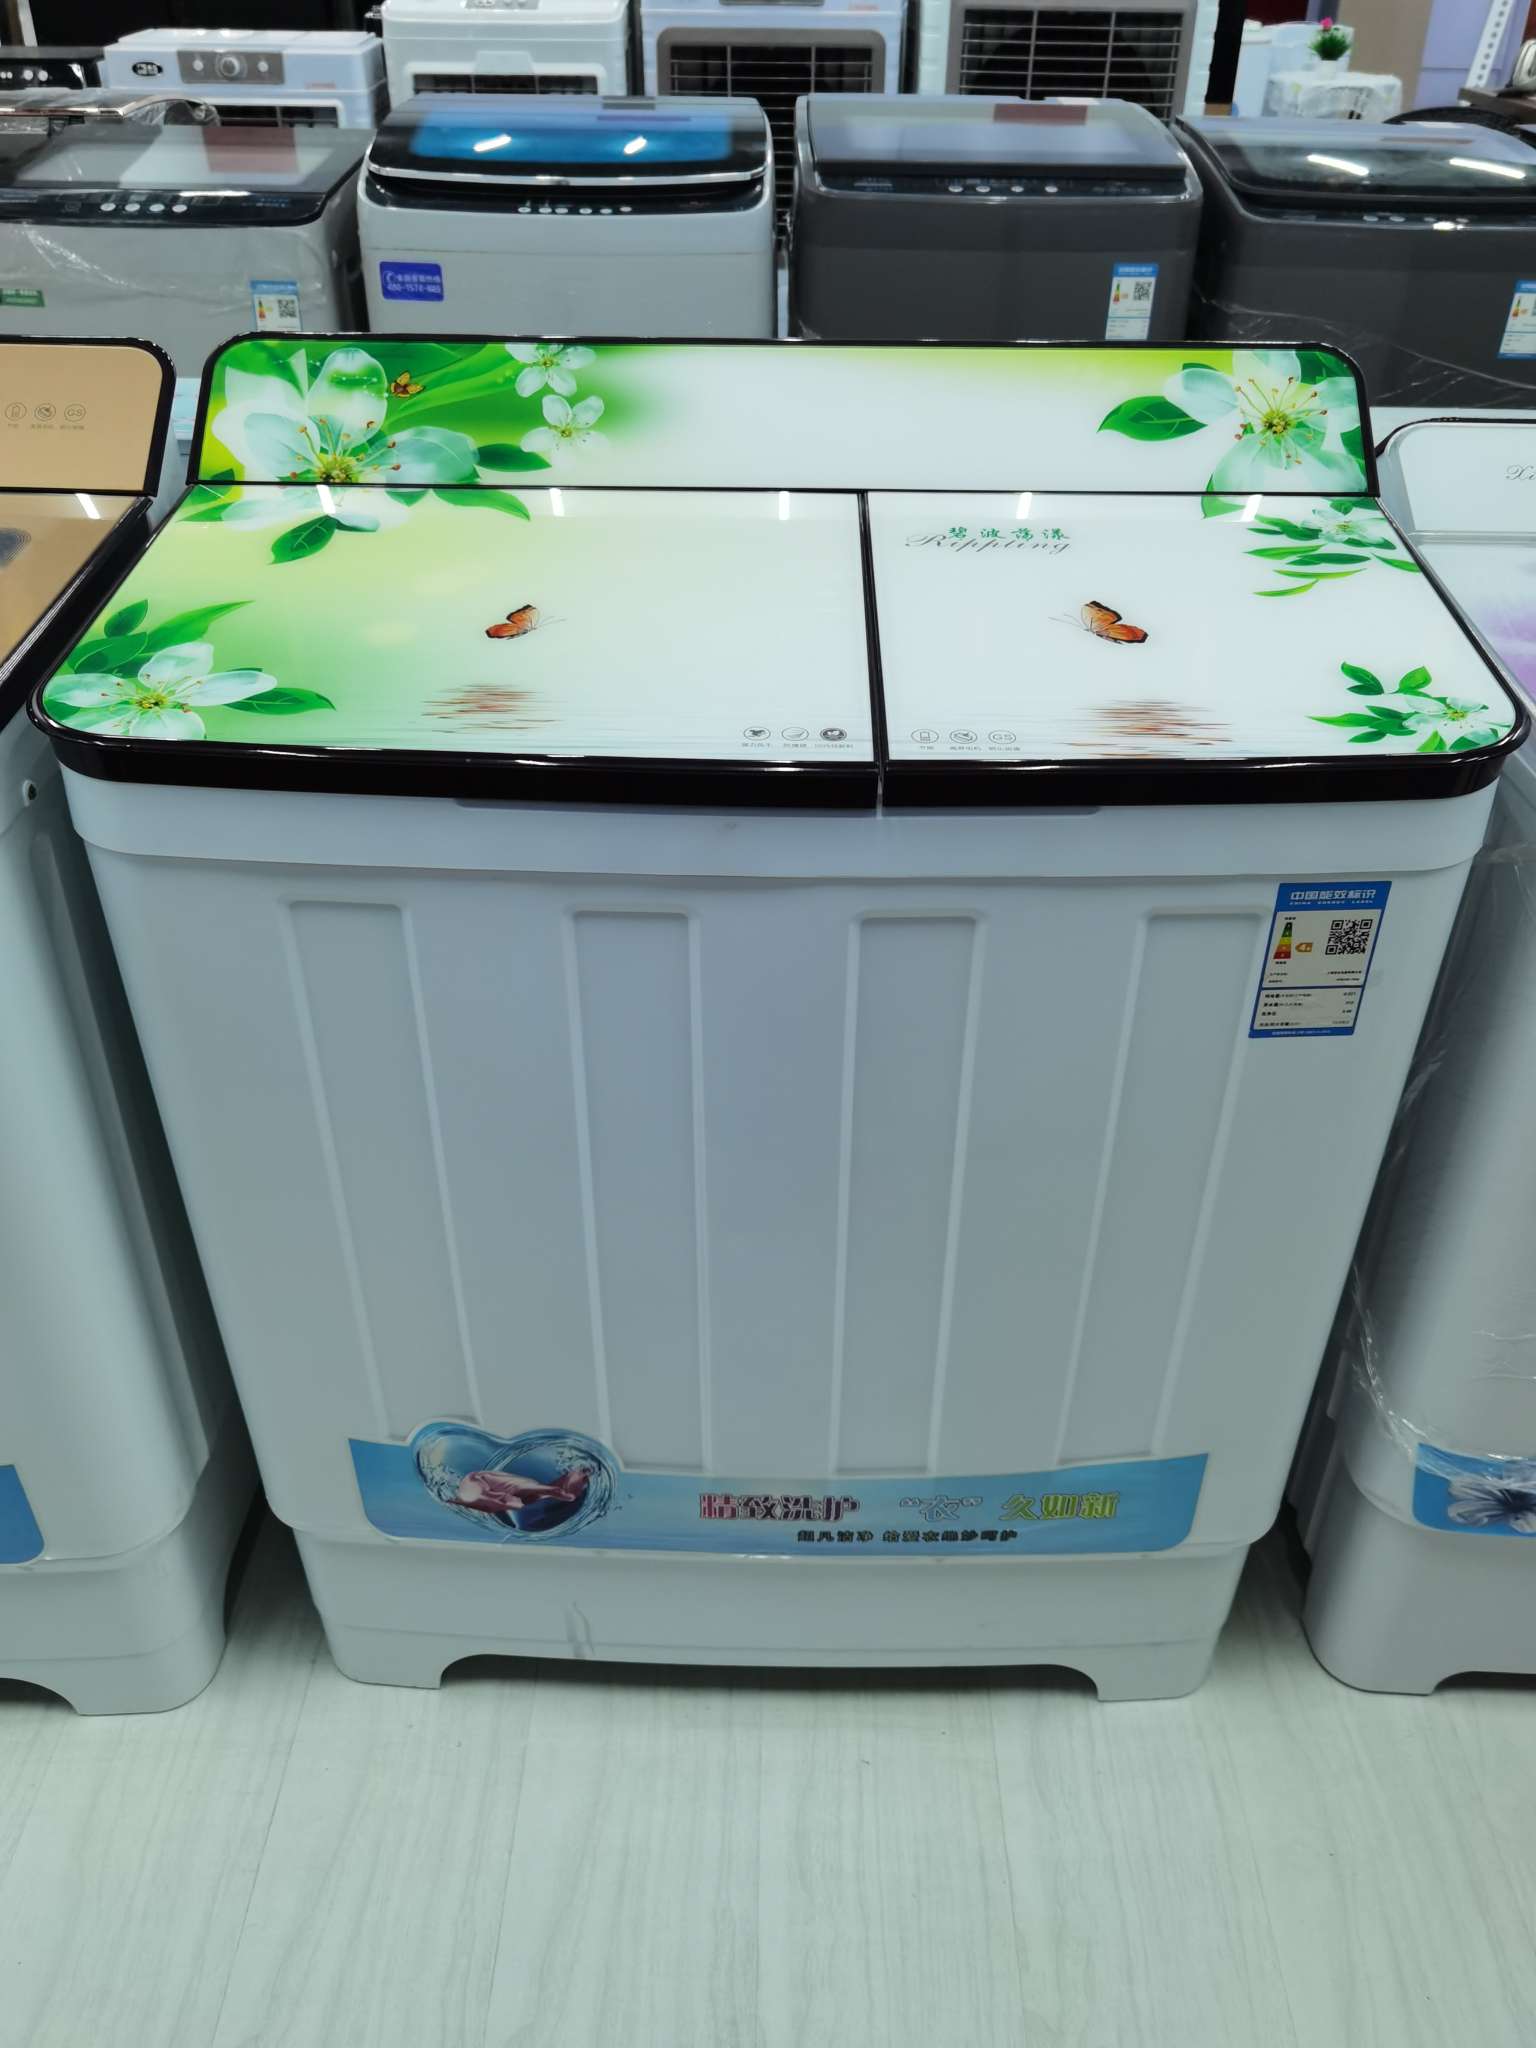 上海华生半自动洗衣机13公斤图